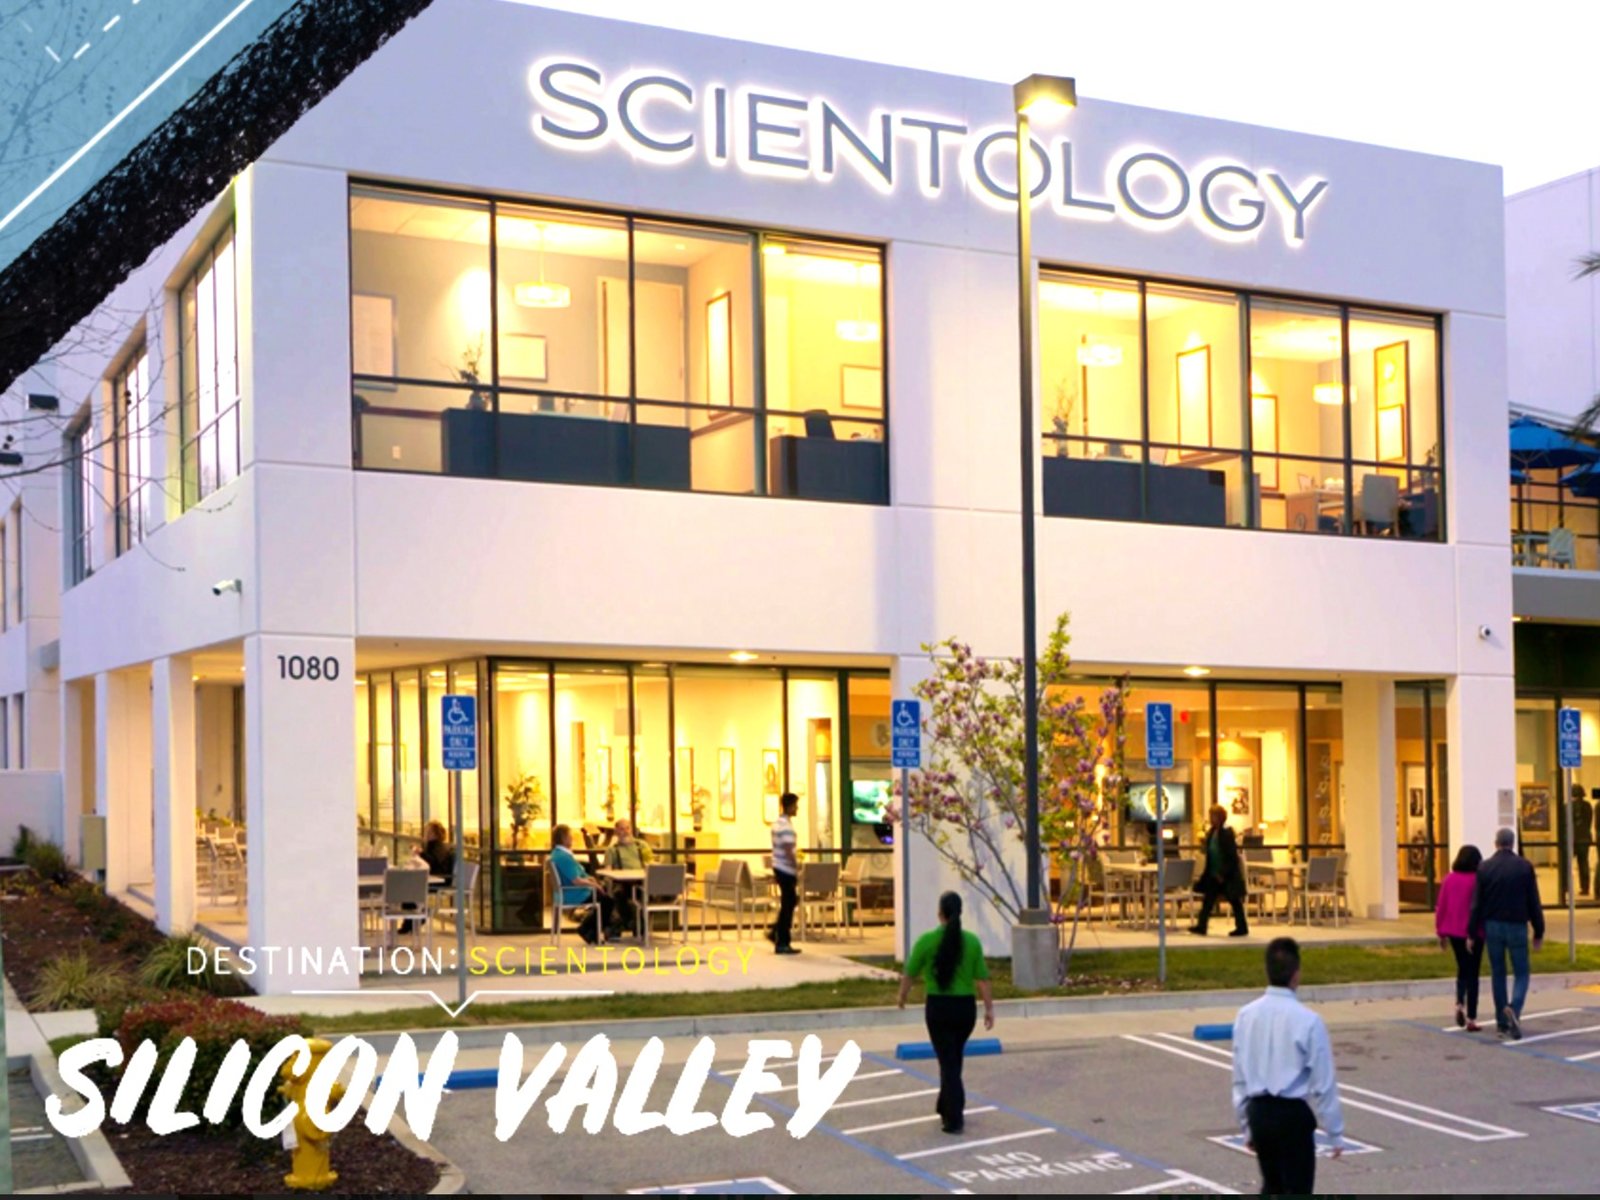 Cíl: Scientologie – Silicon Valley, sledujte epizodu na Scientologické televizi